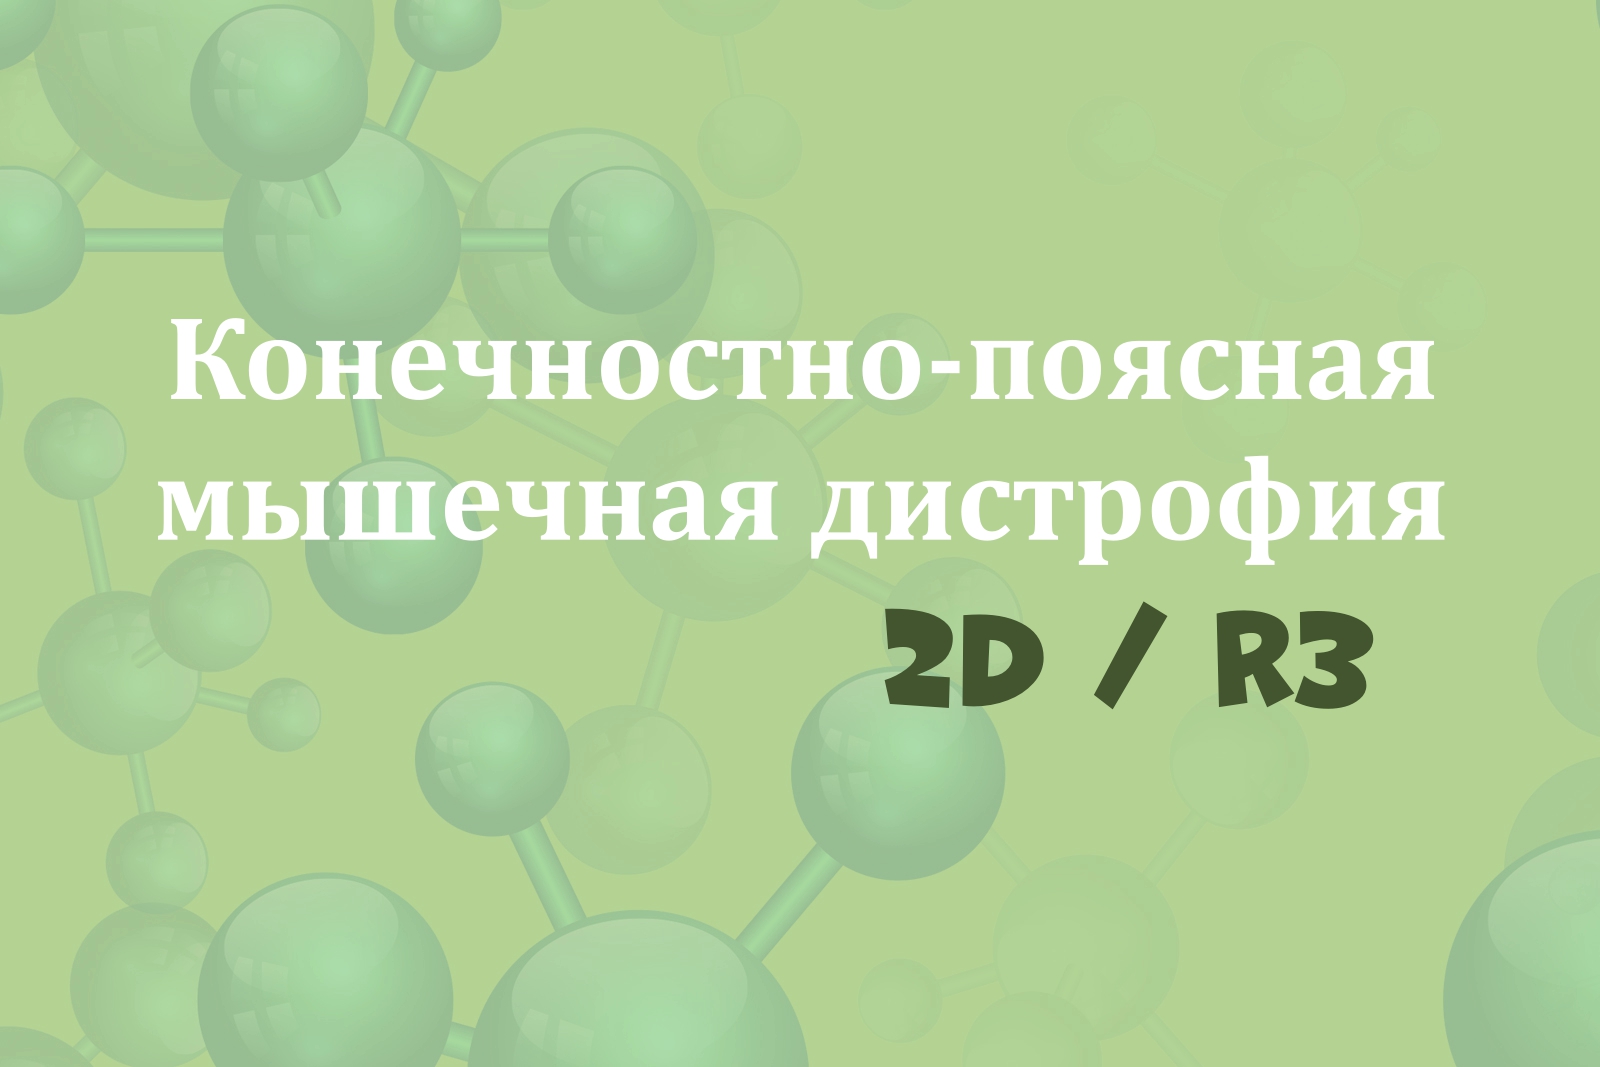 На зелёном фоне с изображением молекул надпись "Конечностно-поясная мышечная дистрофия 2D/R3"